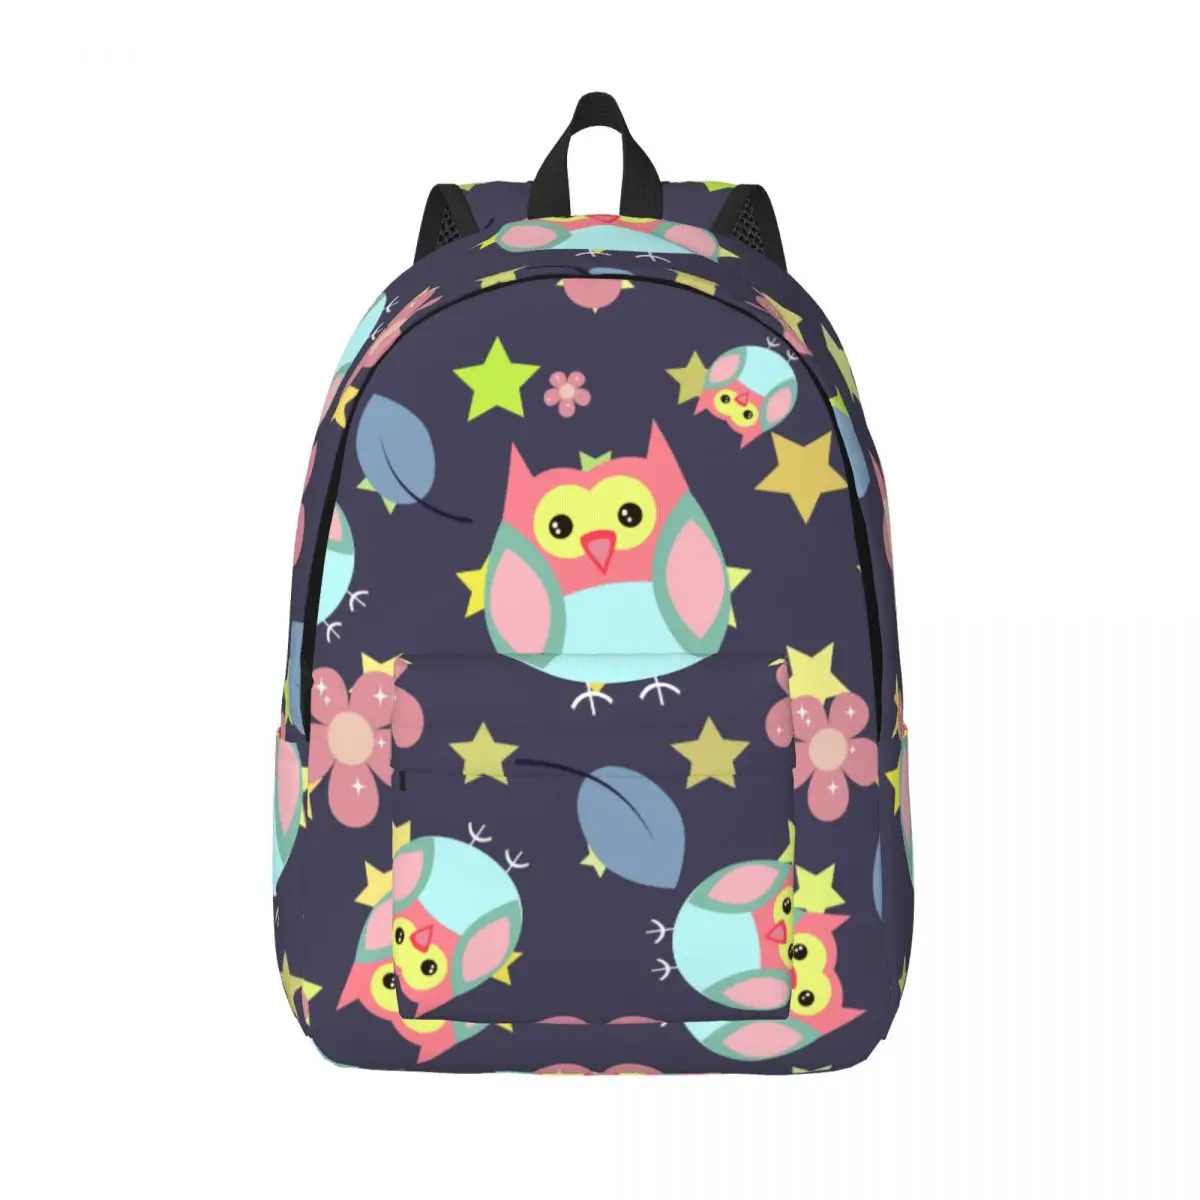 

Owl Stars Backpack Unisex Travel Bag Schoolbag Bookbag Mochila